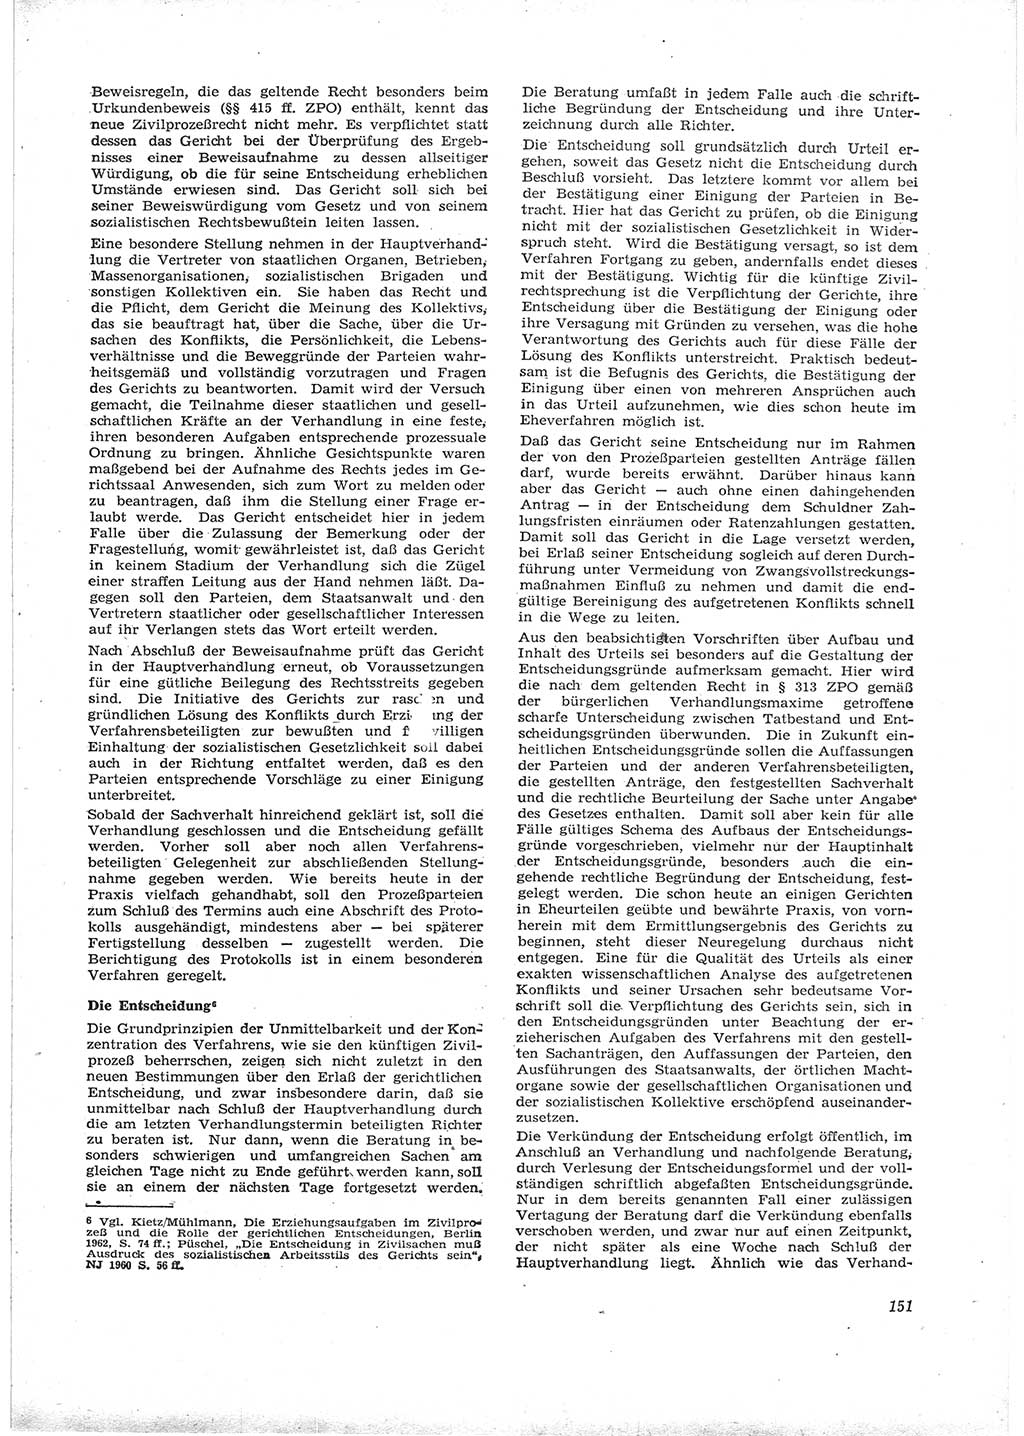 Neue Justiz (NJ), Zeitschrift für Recht und Rechtswissenschaft [Deutsche Demokratische Republik (DDR)], 16. Jahrgang 1962, Seite 151 (NJ DDR 1962, S. 151)